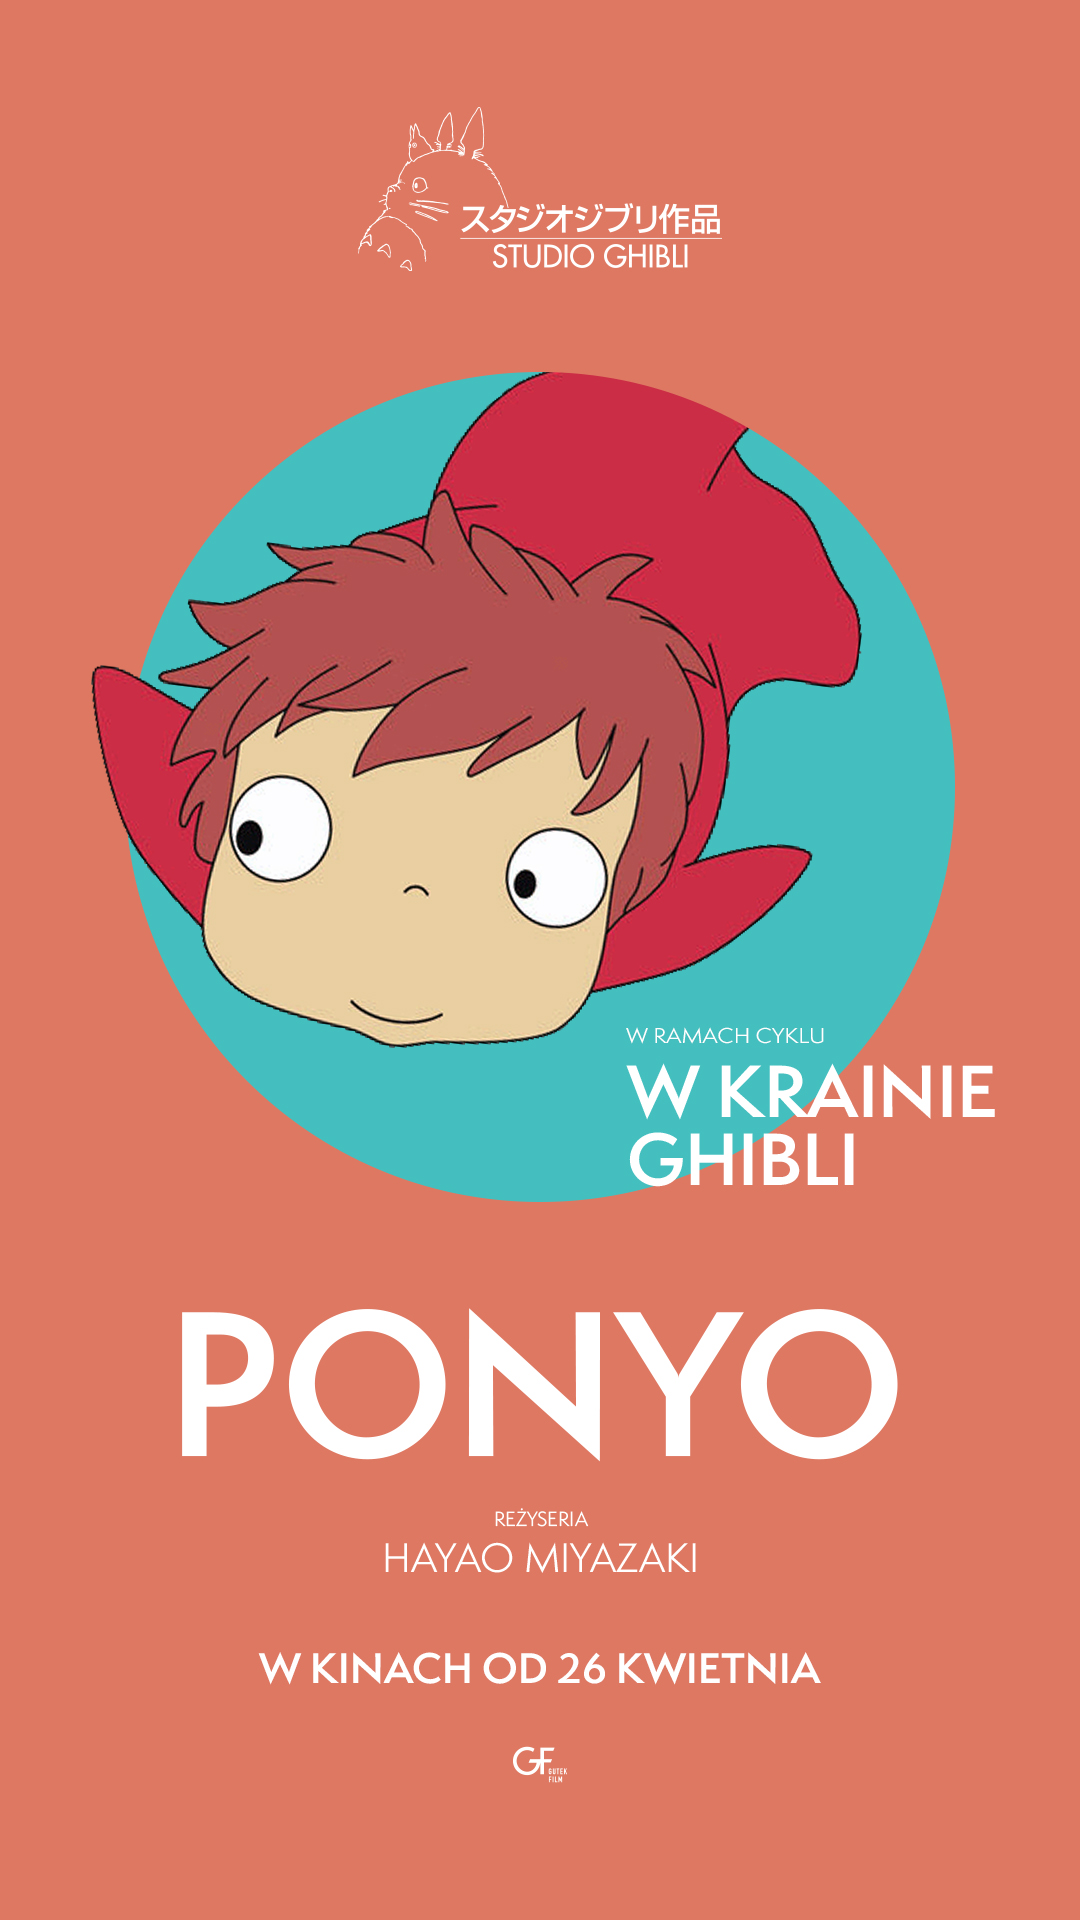 Ponyo_9x16_v2